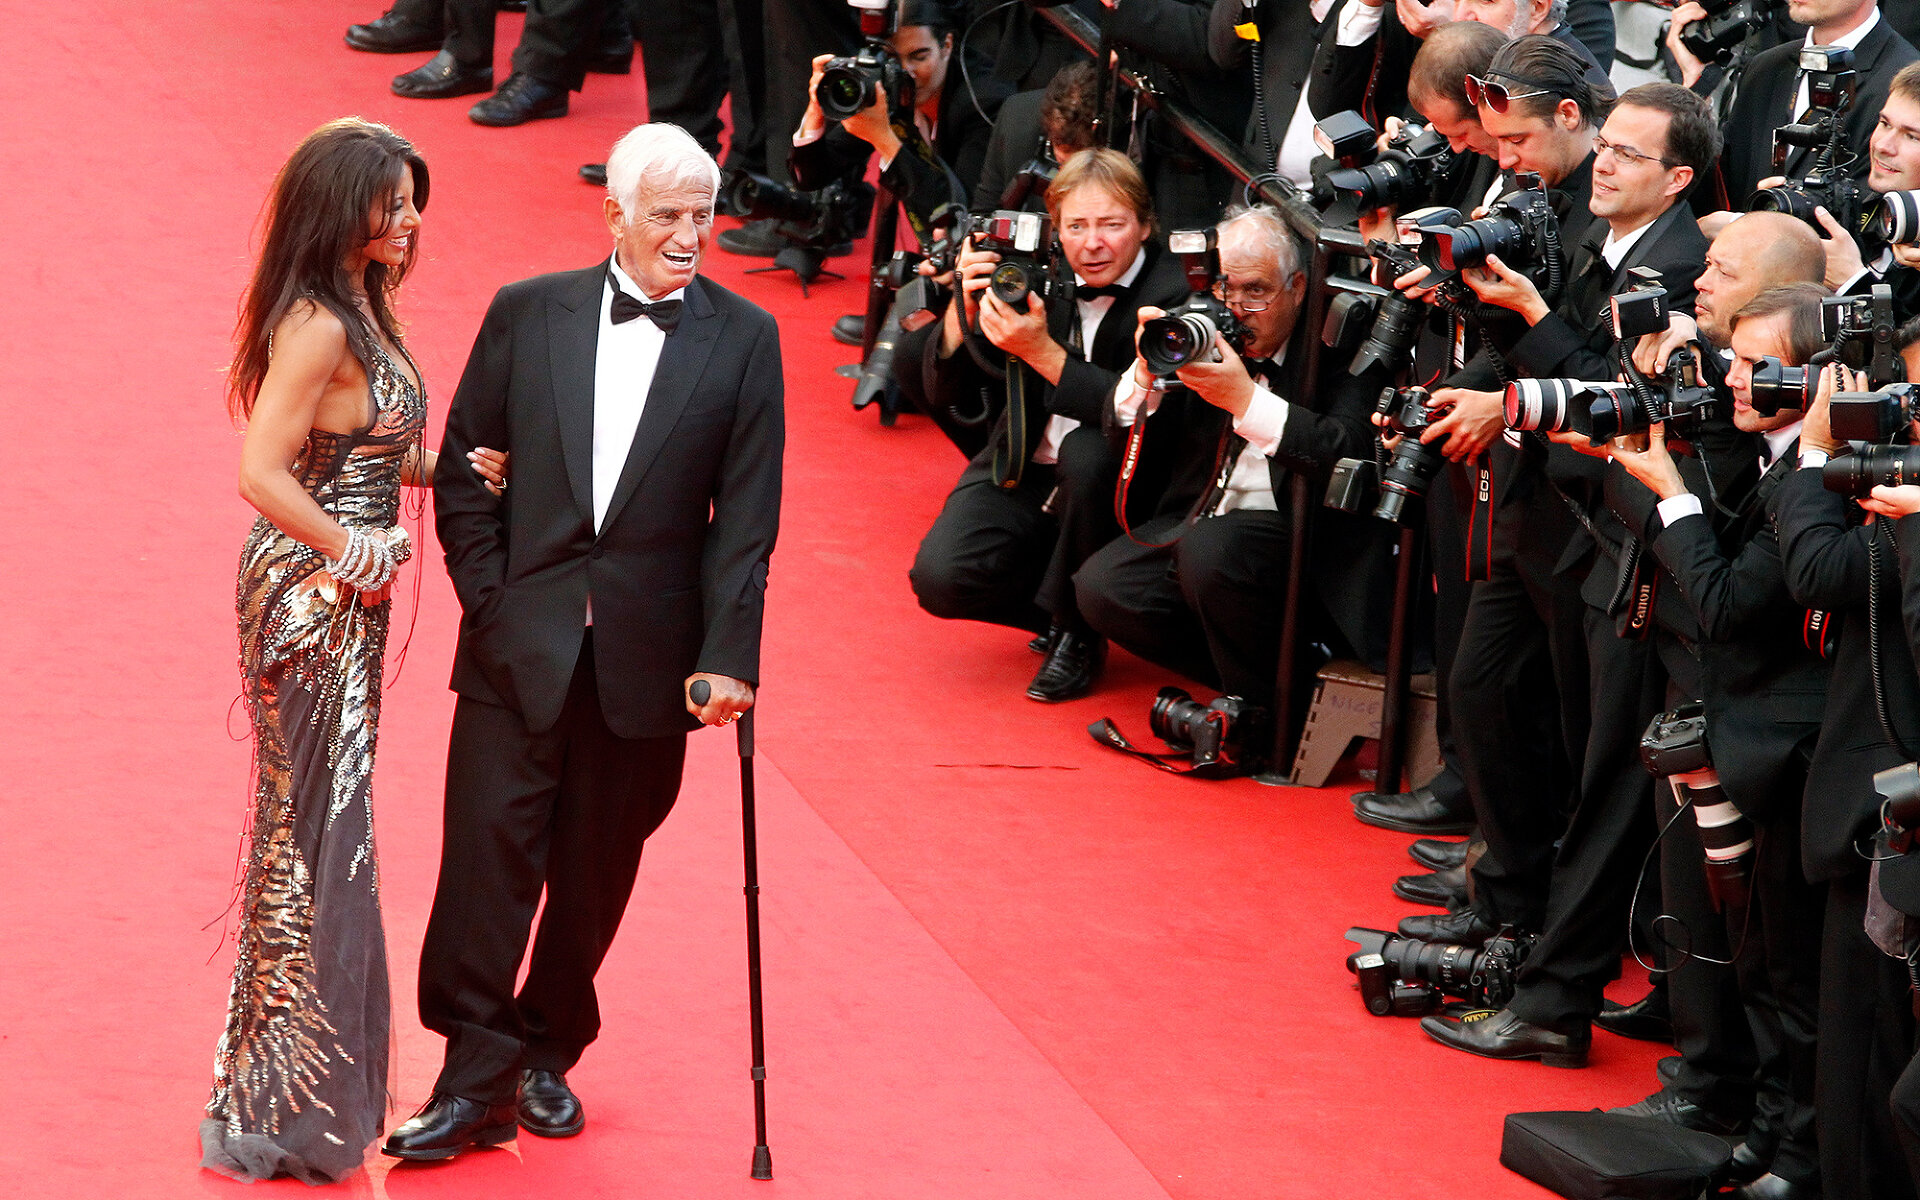 <p>В 2011 году, 17 мая, после показа биографического фильма о Бельмондо на Каннском кинофестивале актера наградили Почетной Золотой пальмовой ветвью за достижения в его кинокарьере. С 1990-х годов такую награду получили всего 15 человек, в том числе партнеры Бельмондо по французскому кино Ален Делон и Катрин Денев.</p>